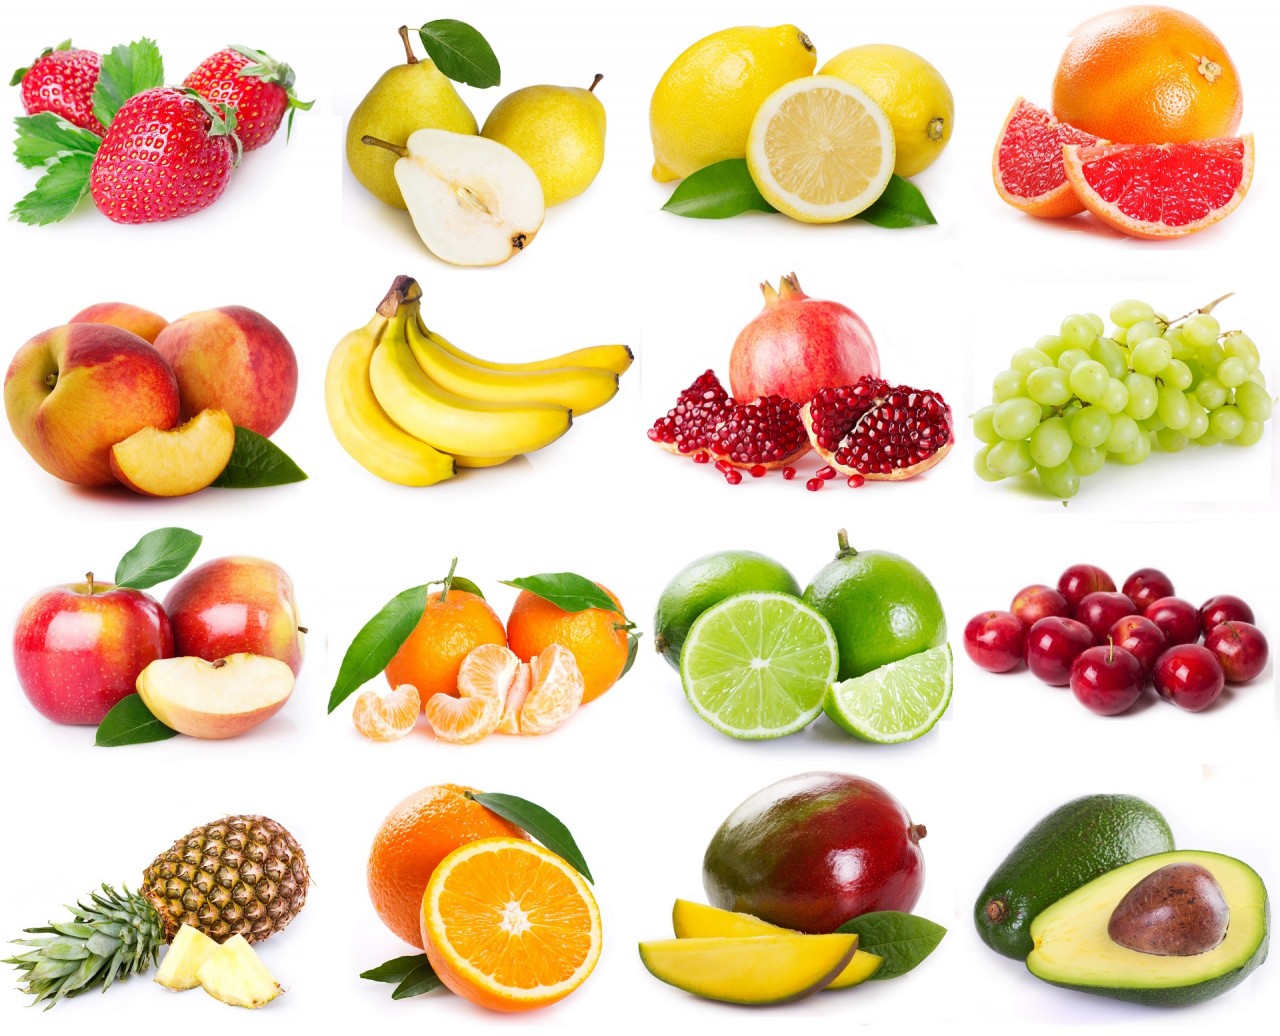 Сьогодні ми докладно розповімо про те, які фрукти і роки можна діабетикам, адже саме вони є одним з найбільш корисних і багатих на вітаміни продуктів з існуючих, і замінити свіжі овочі і фрукти людині просто нема чим